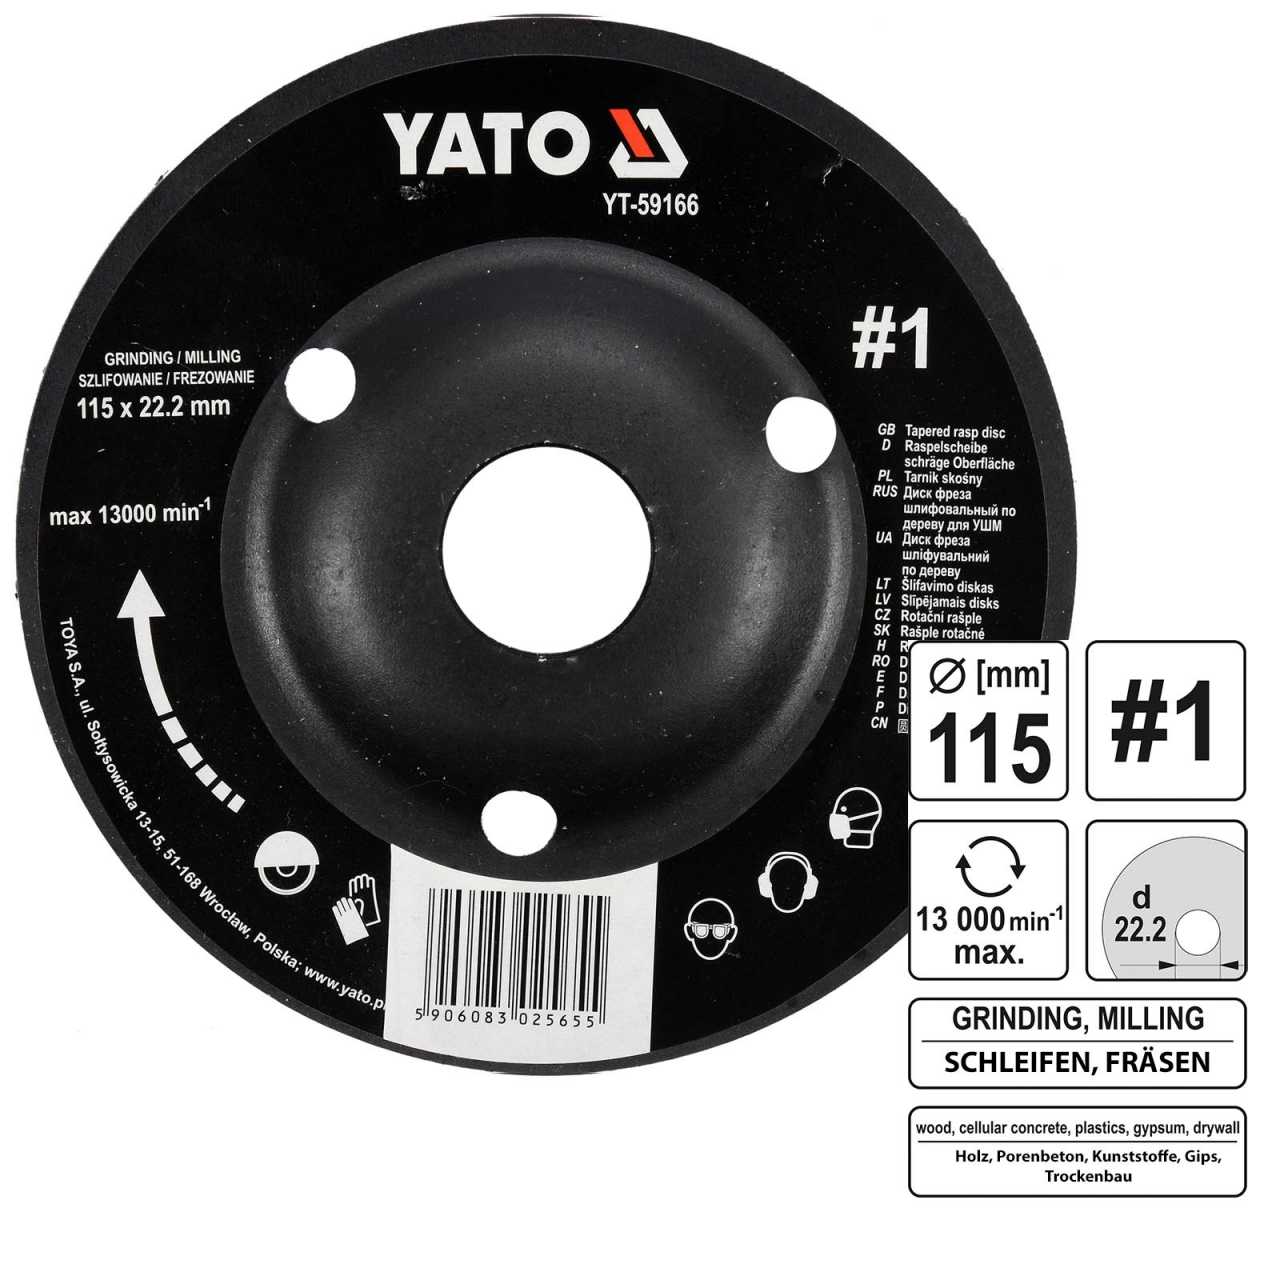 YATO Profi Raspelscheibe für Winkelschleifer 115mm No 1 YT-59166